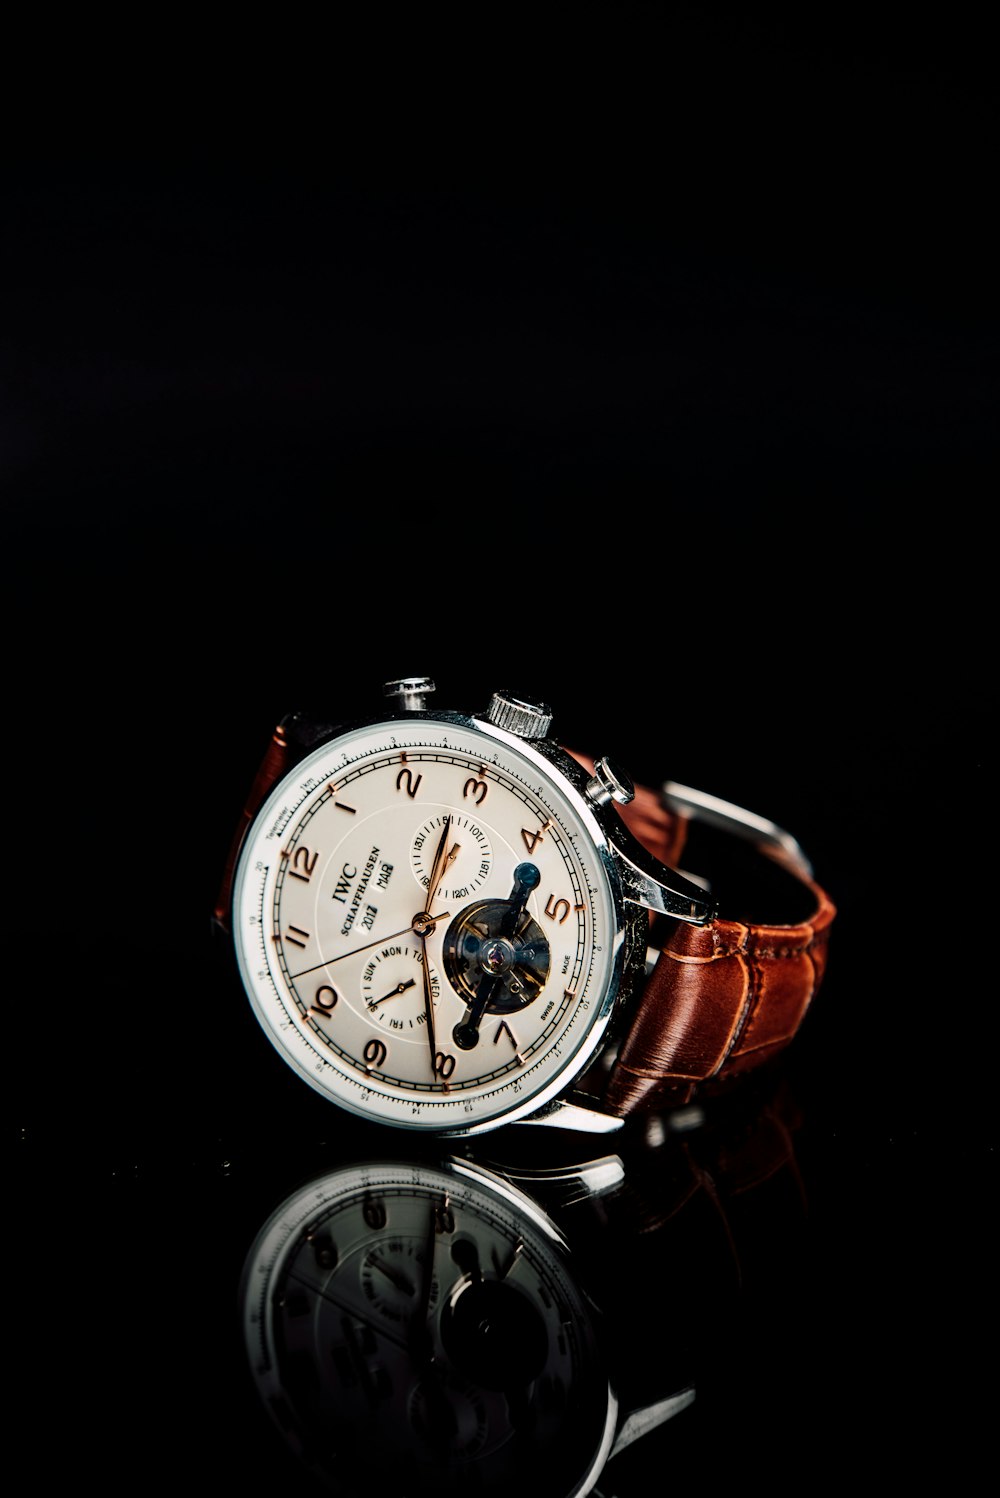 Montre chronographe ronde argentée avec bracelet en cuir marron